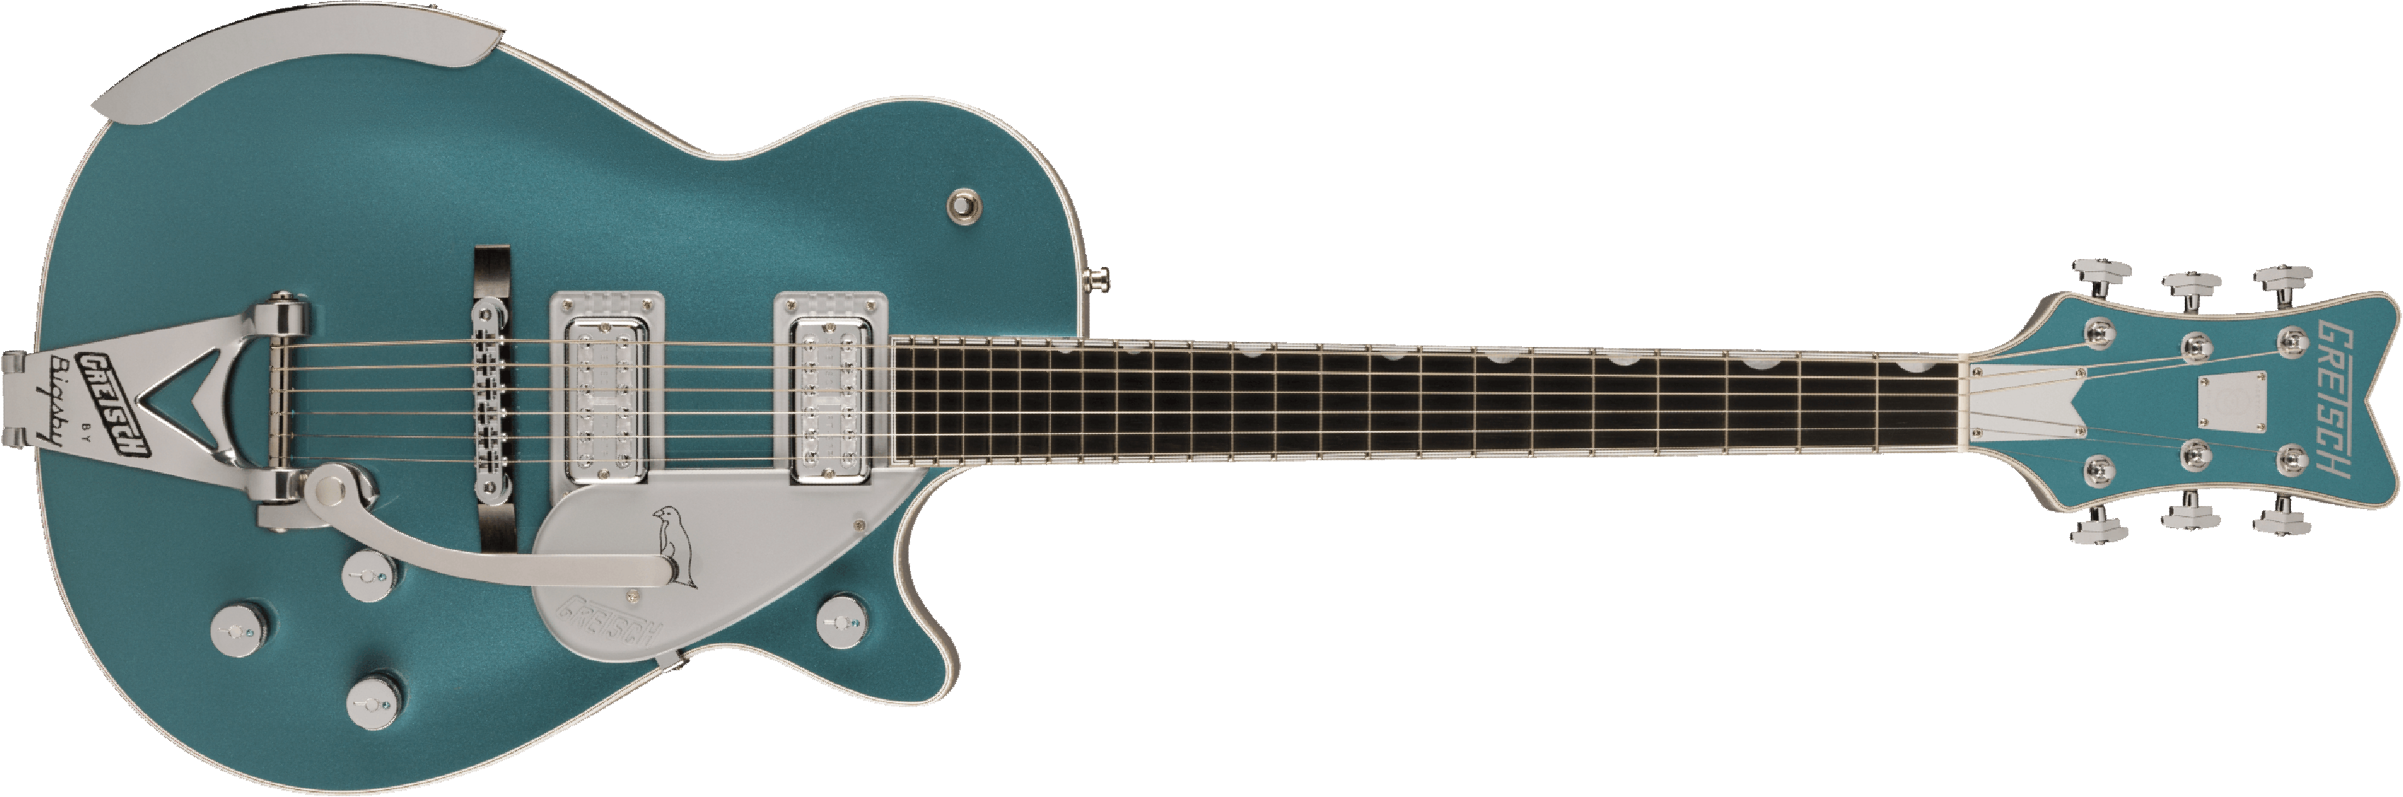 Gretsch G6134t-140 Ltd 140th Double-platinum Penguin Bigsby Pro Jap 2h Trem Eb - Two-tone Stone / Pure Platinum - Enkel gesneden elektrische gitaar - 